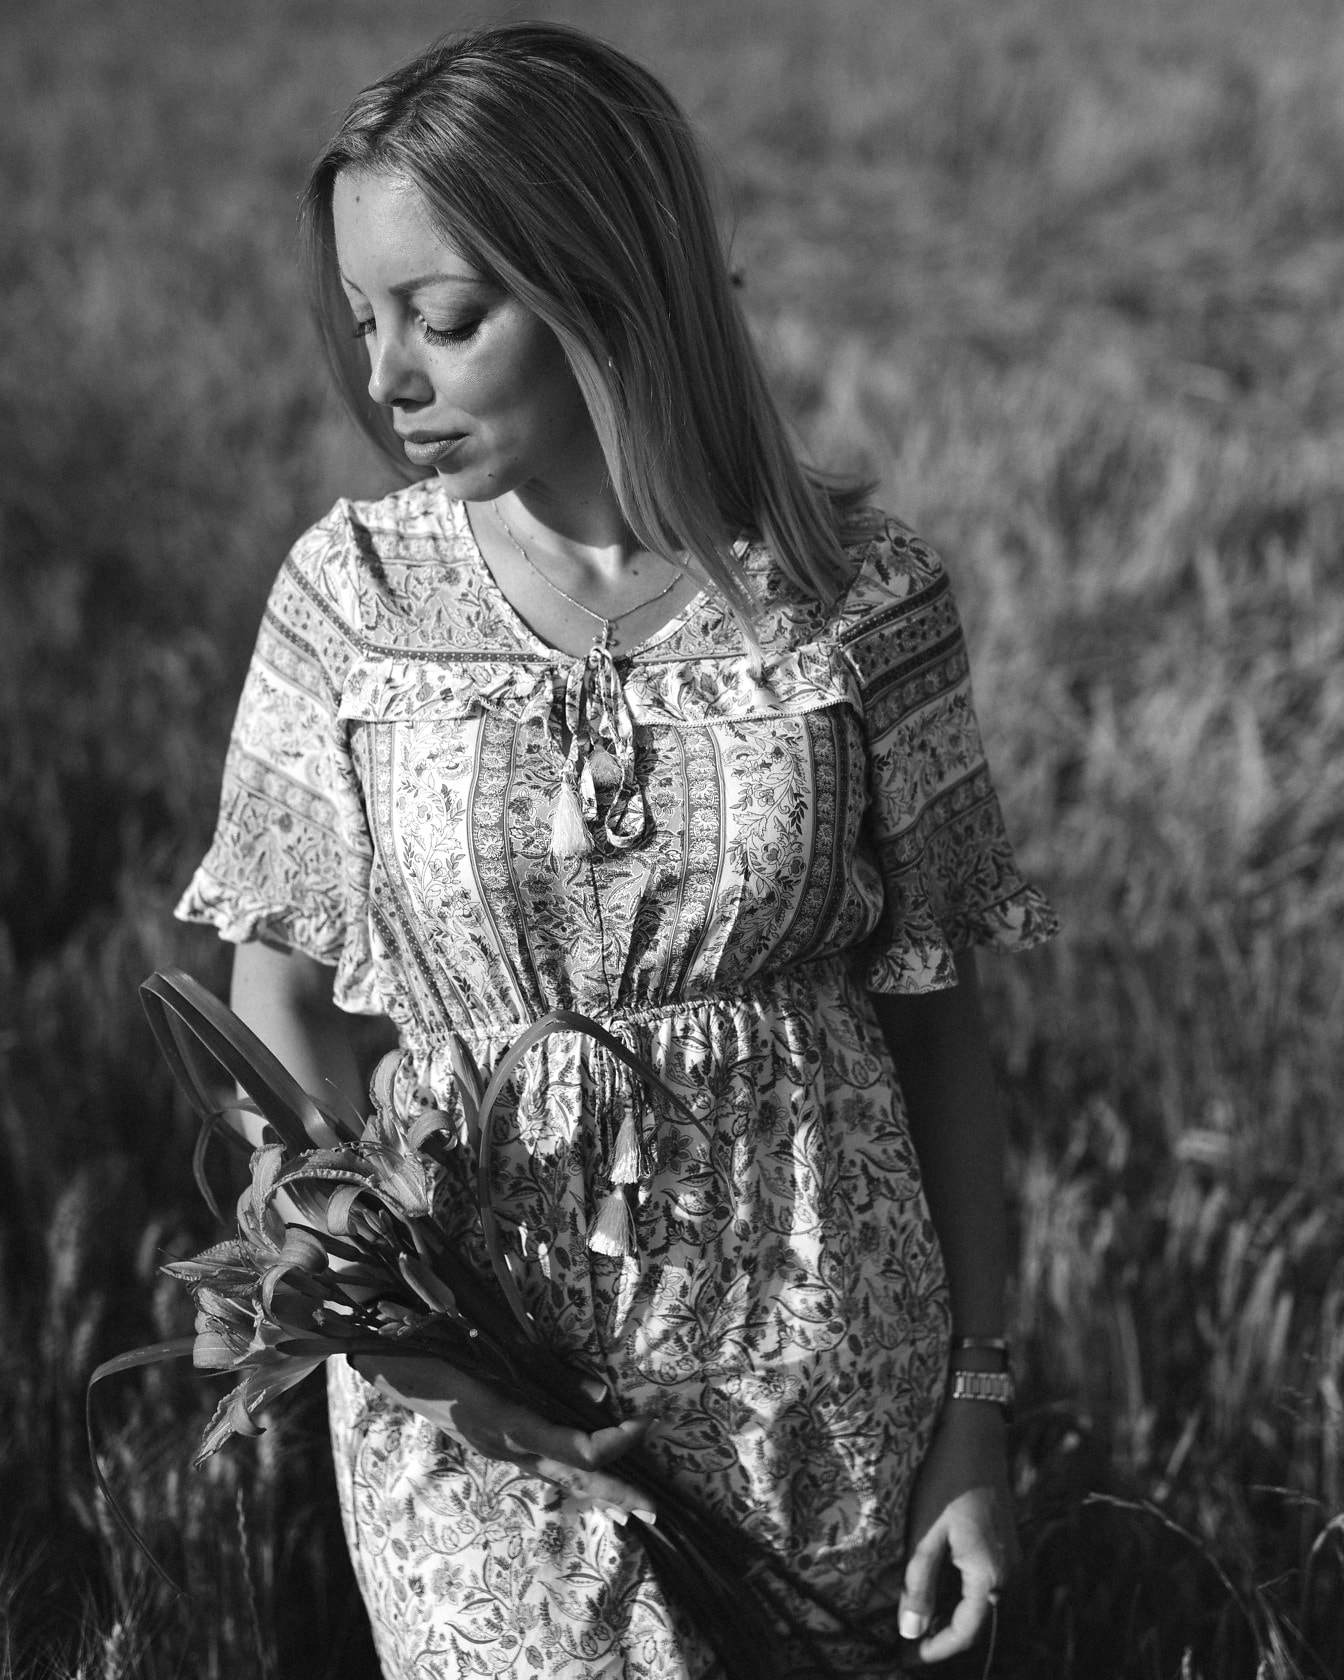 Monochrome portrait of gorgeous woman in wheat field wearing dress